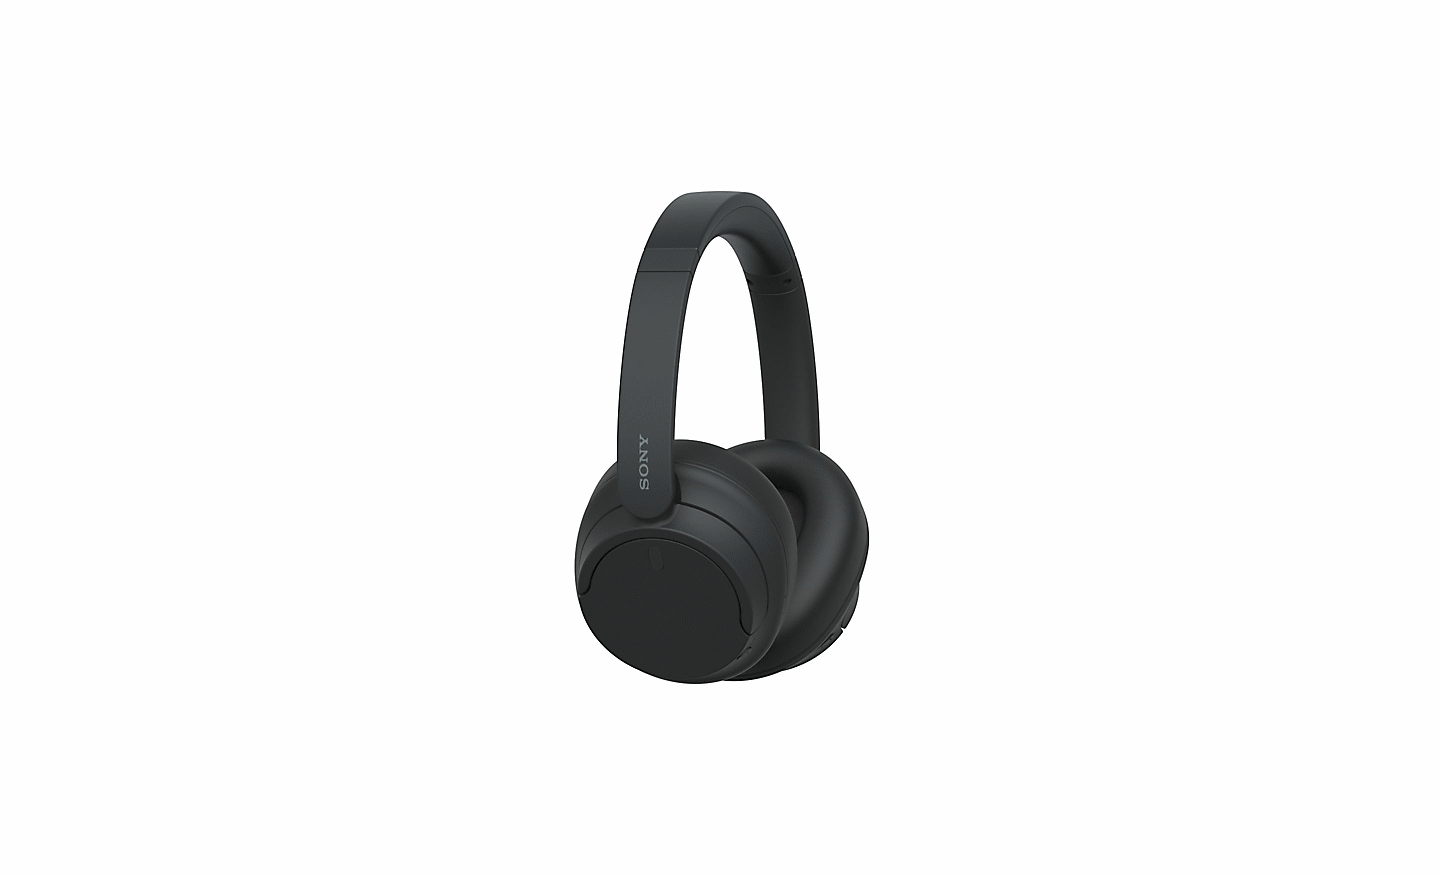 Imagen de unos audífonos negros WH-CH720 de Sony sobre un fondo blanco